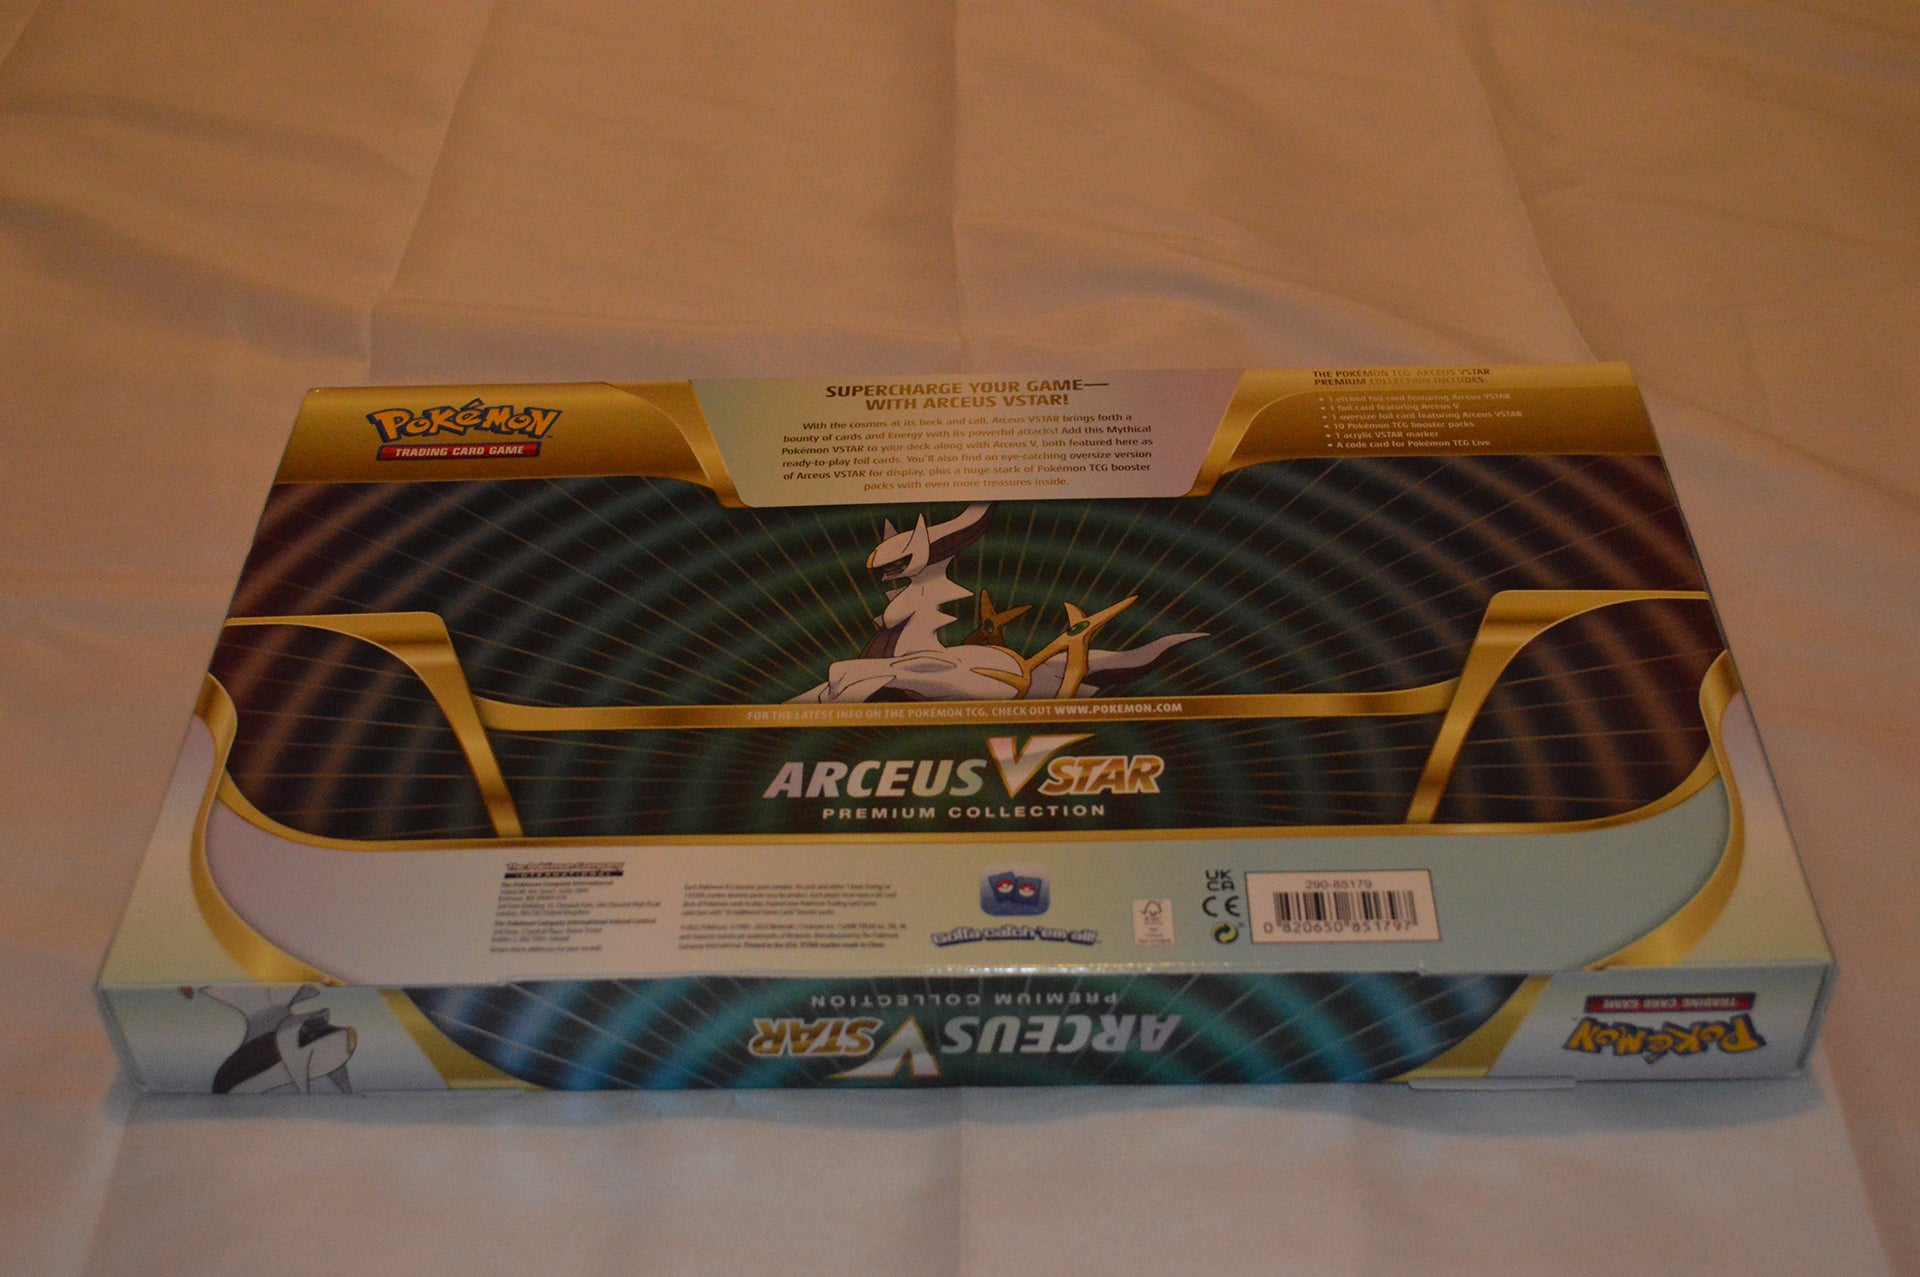 Pokémon TCG: Arceus VSTAR Premium Collection